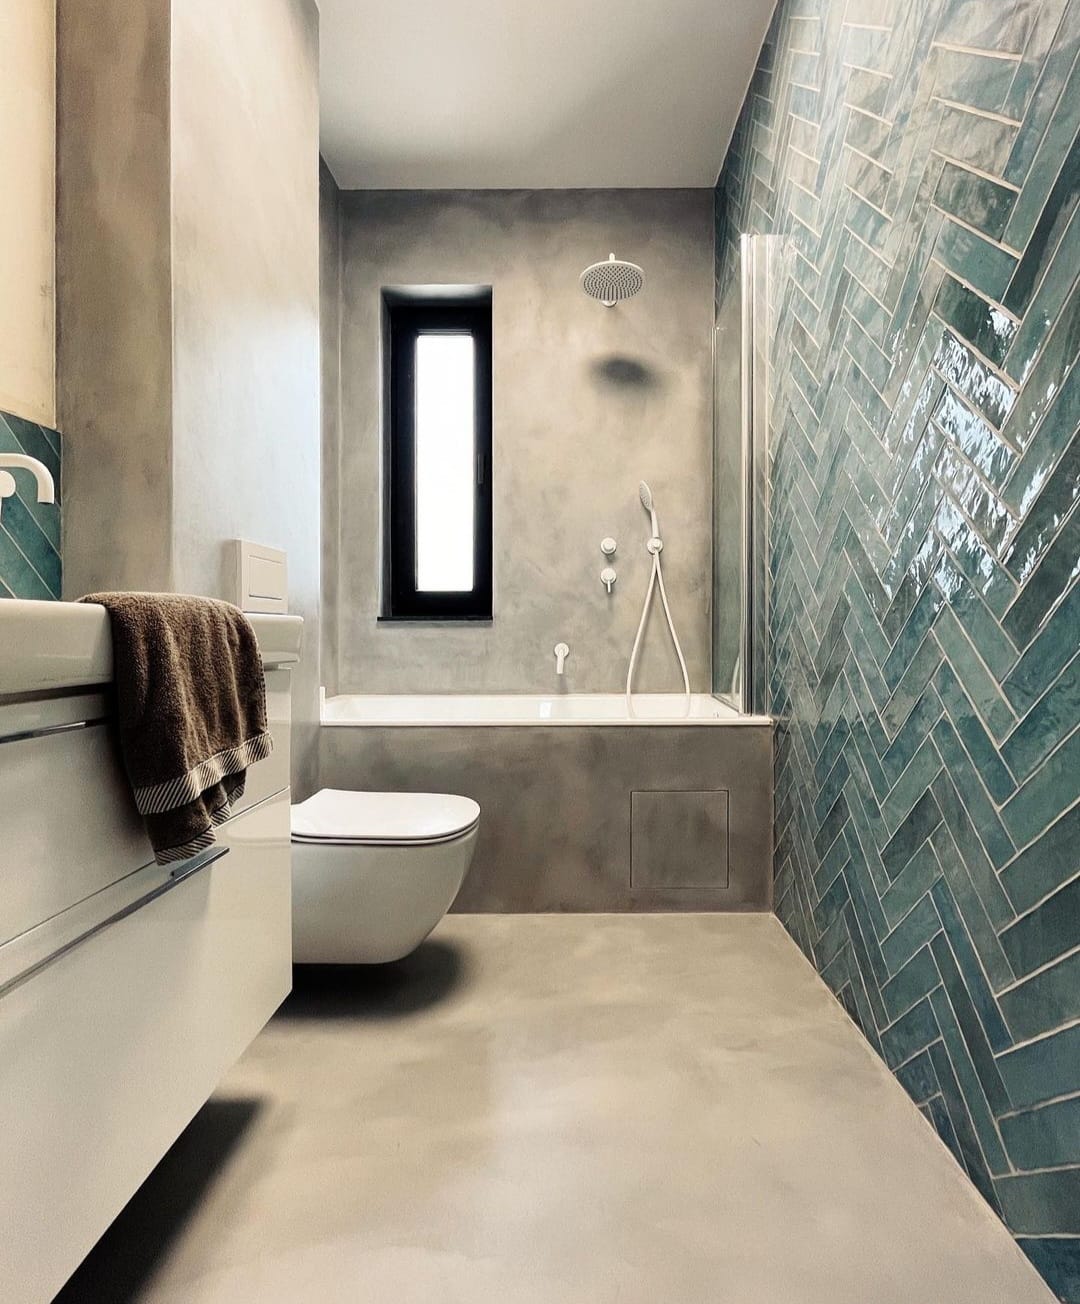 Inspiracje łazienka - Nowoczesna łazienka z mikrocementowymi podłogami i unikalnymi niebieskimi kafelkami na jednej ze ścian, prezentująca nowoczesny design.